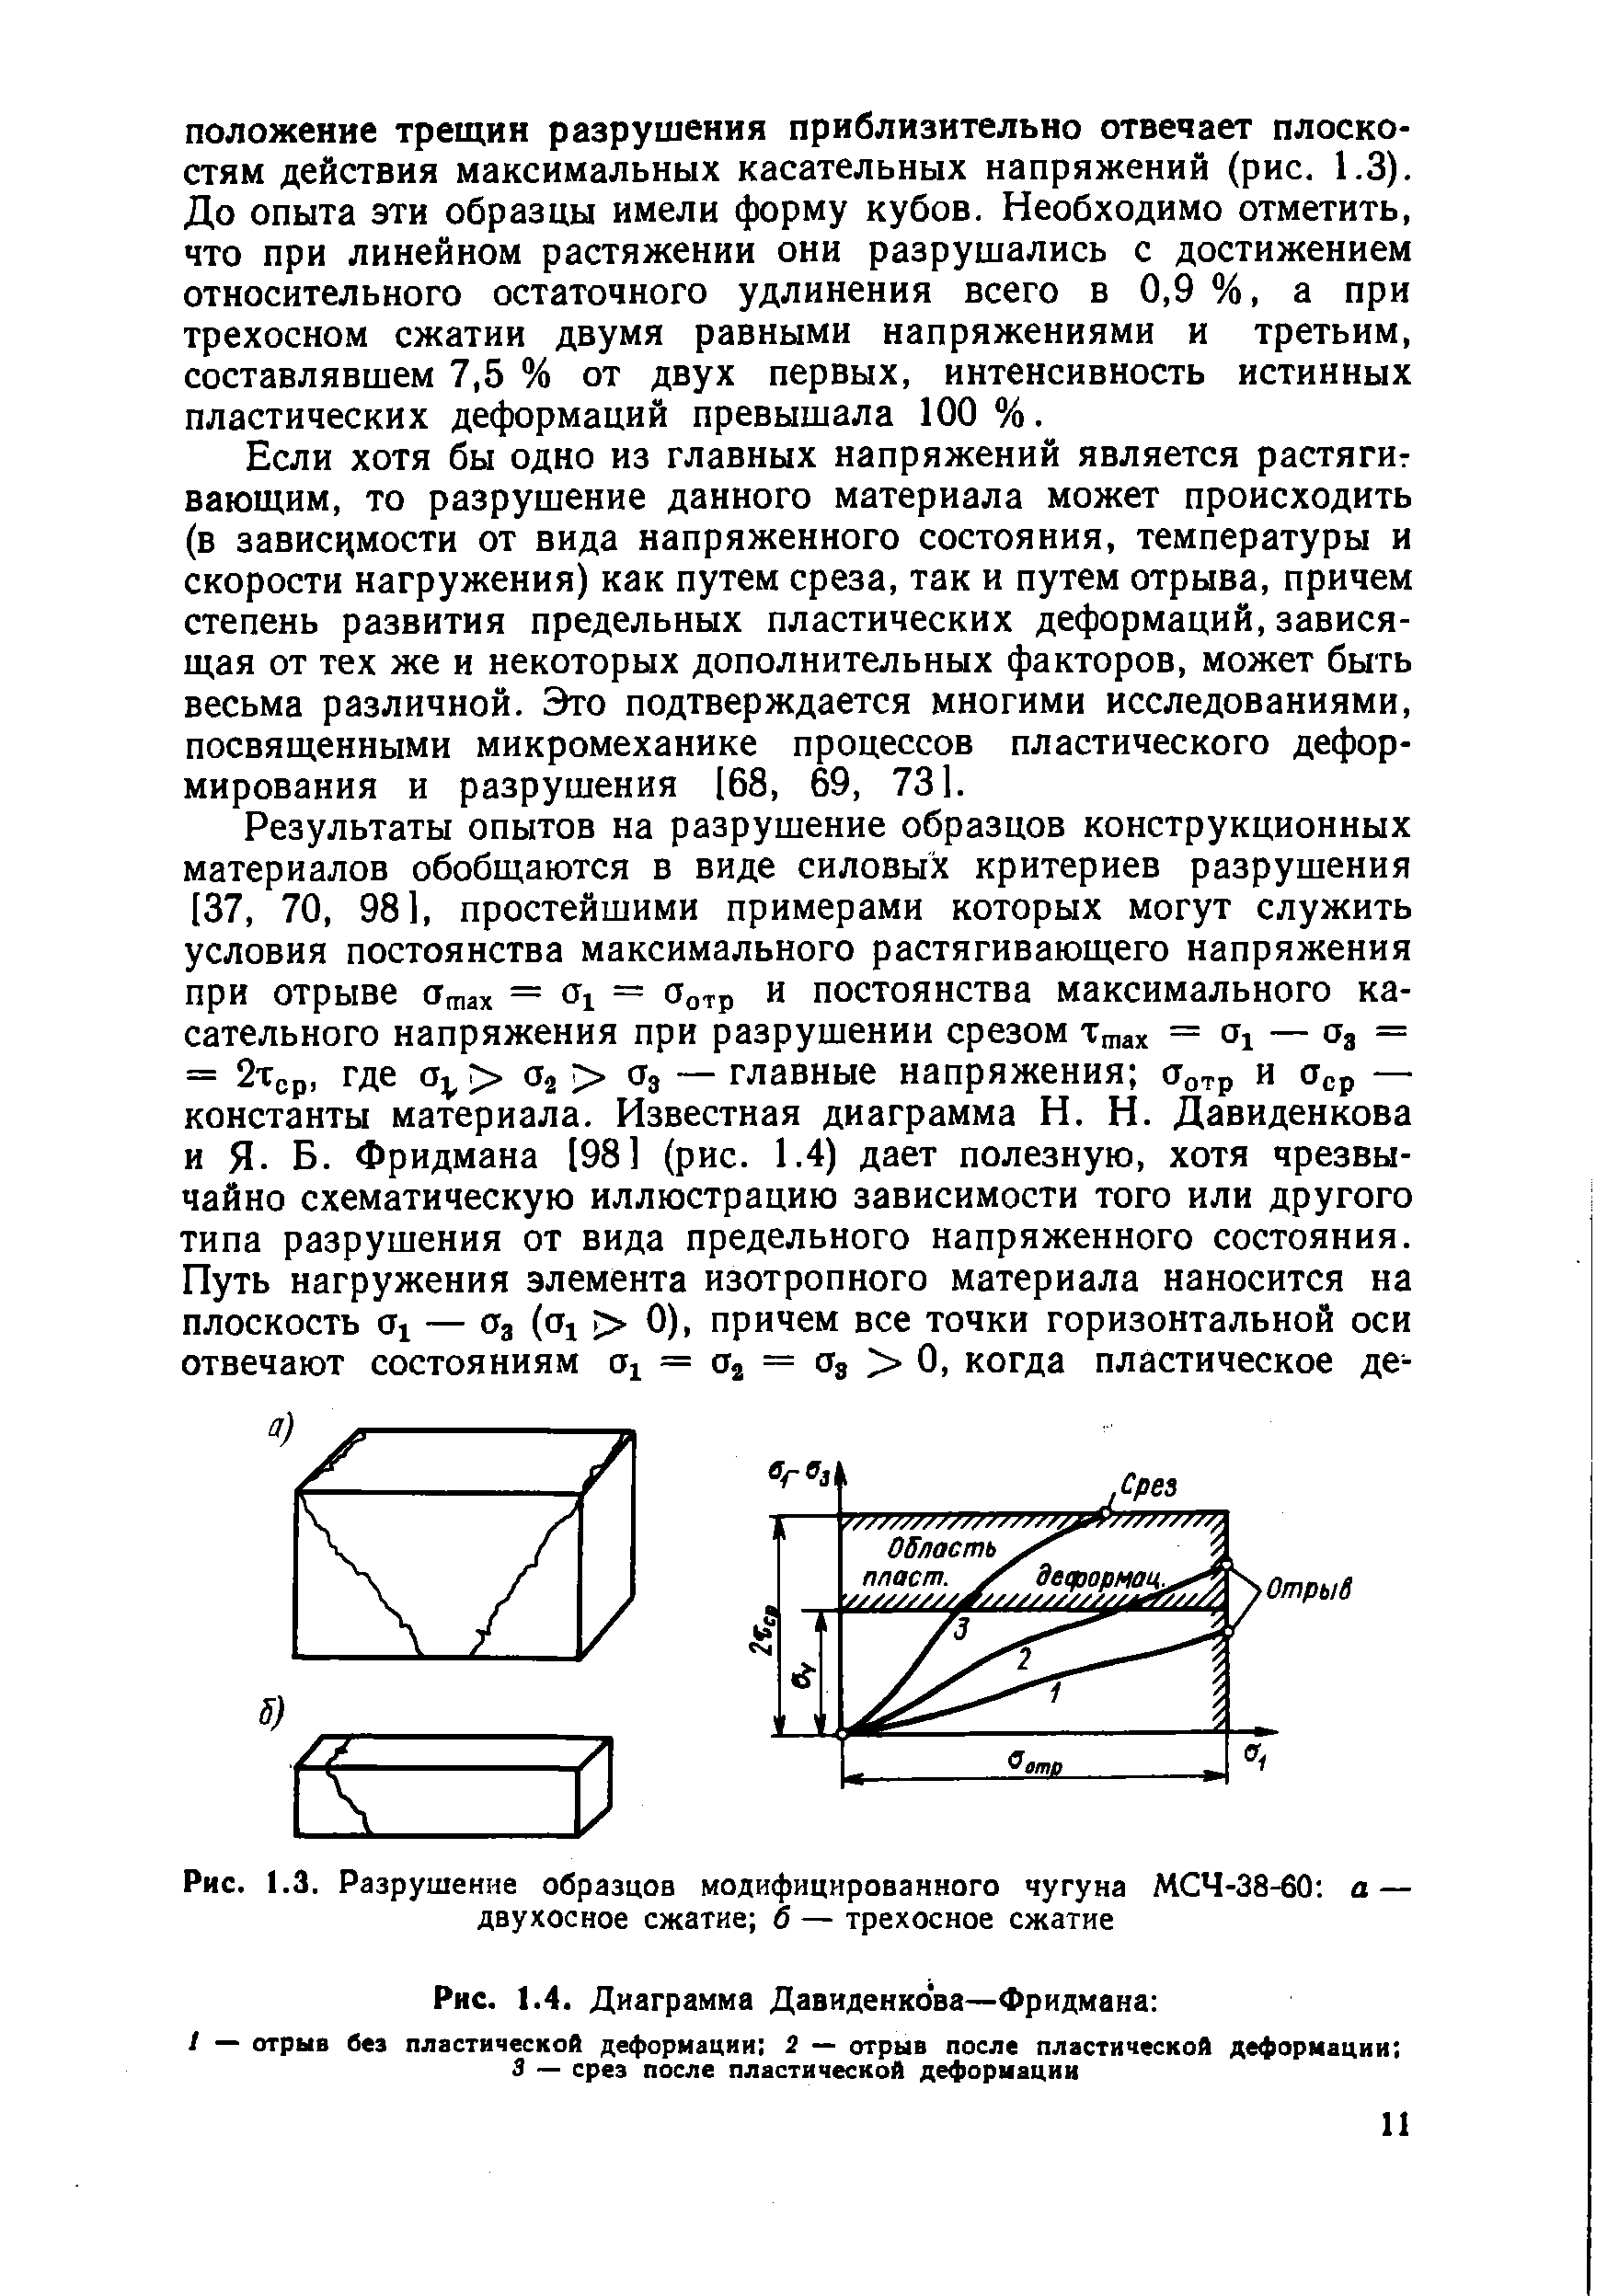 Рис. 1.4. Диаграмма Давиденкова—Фридмана 
